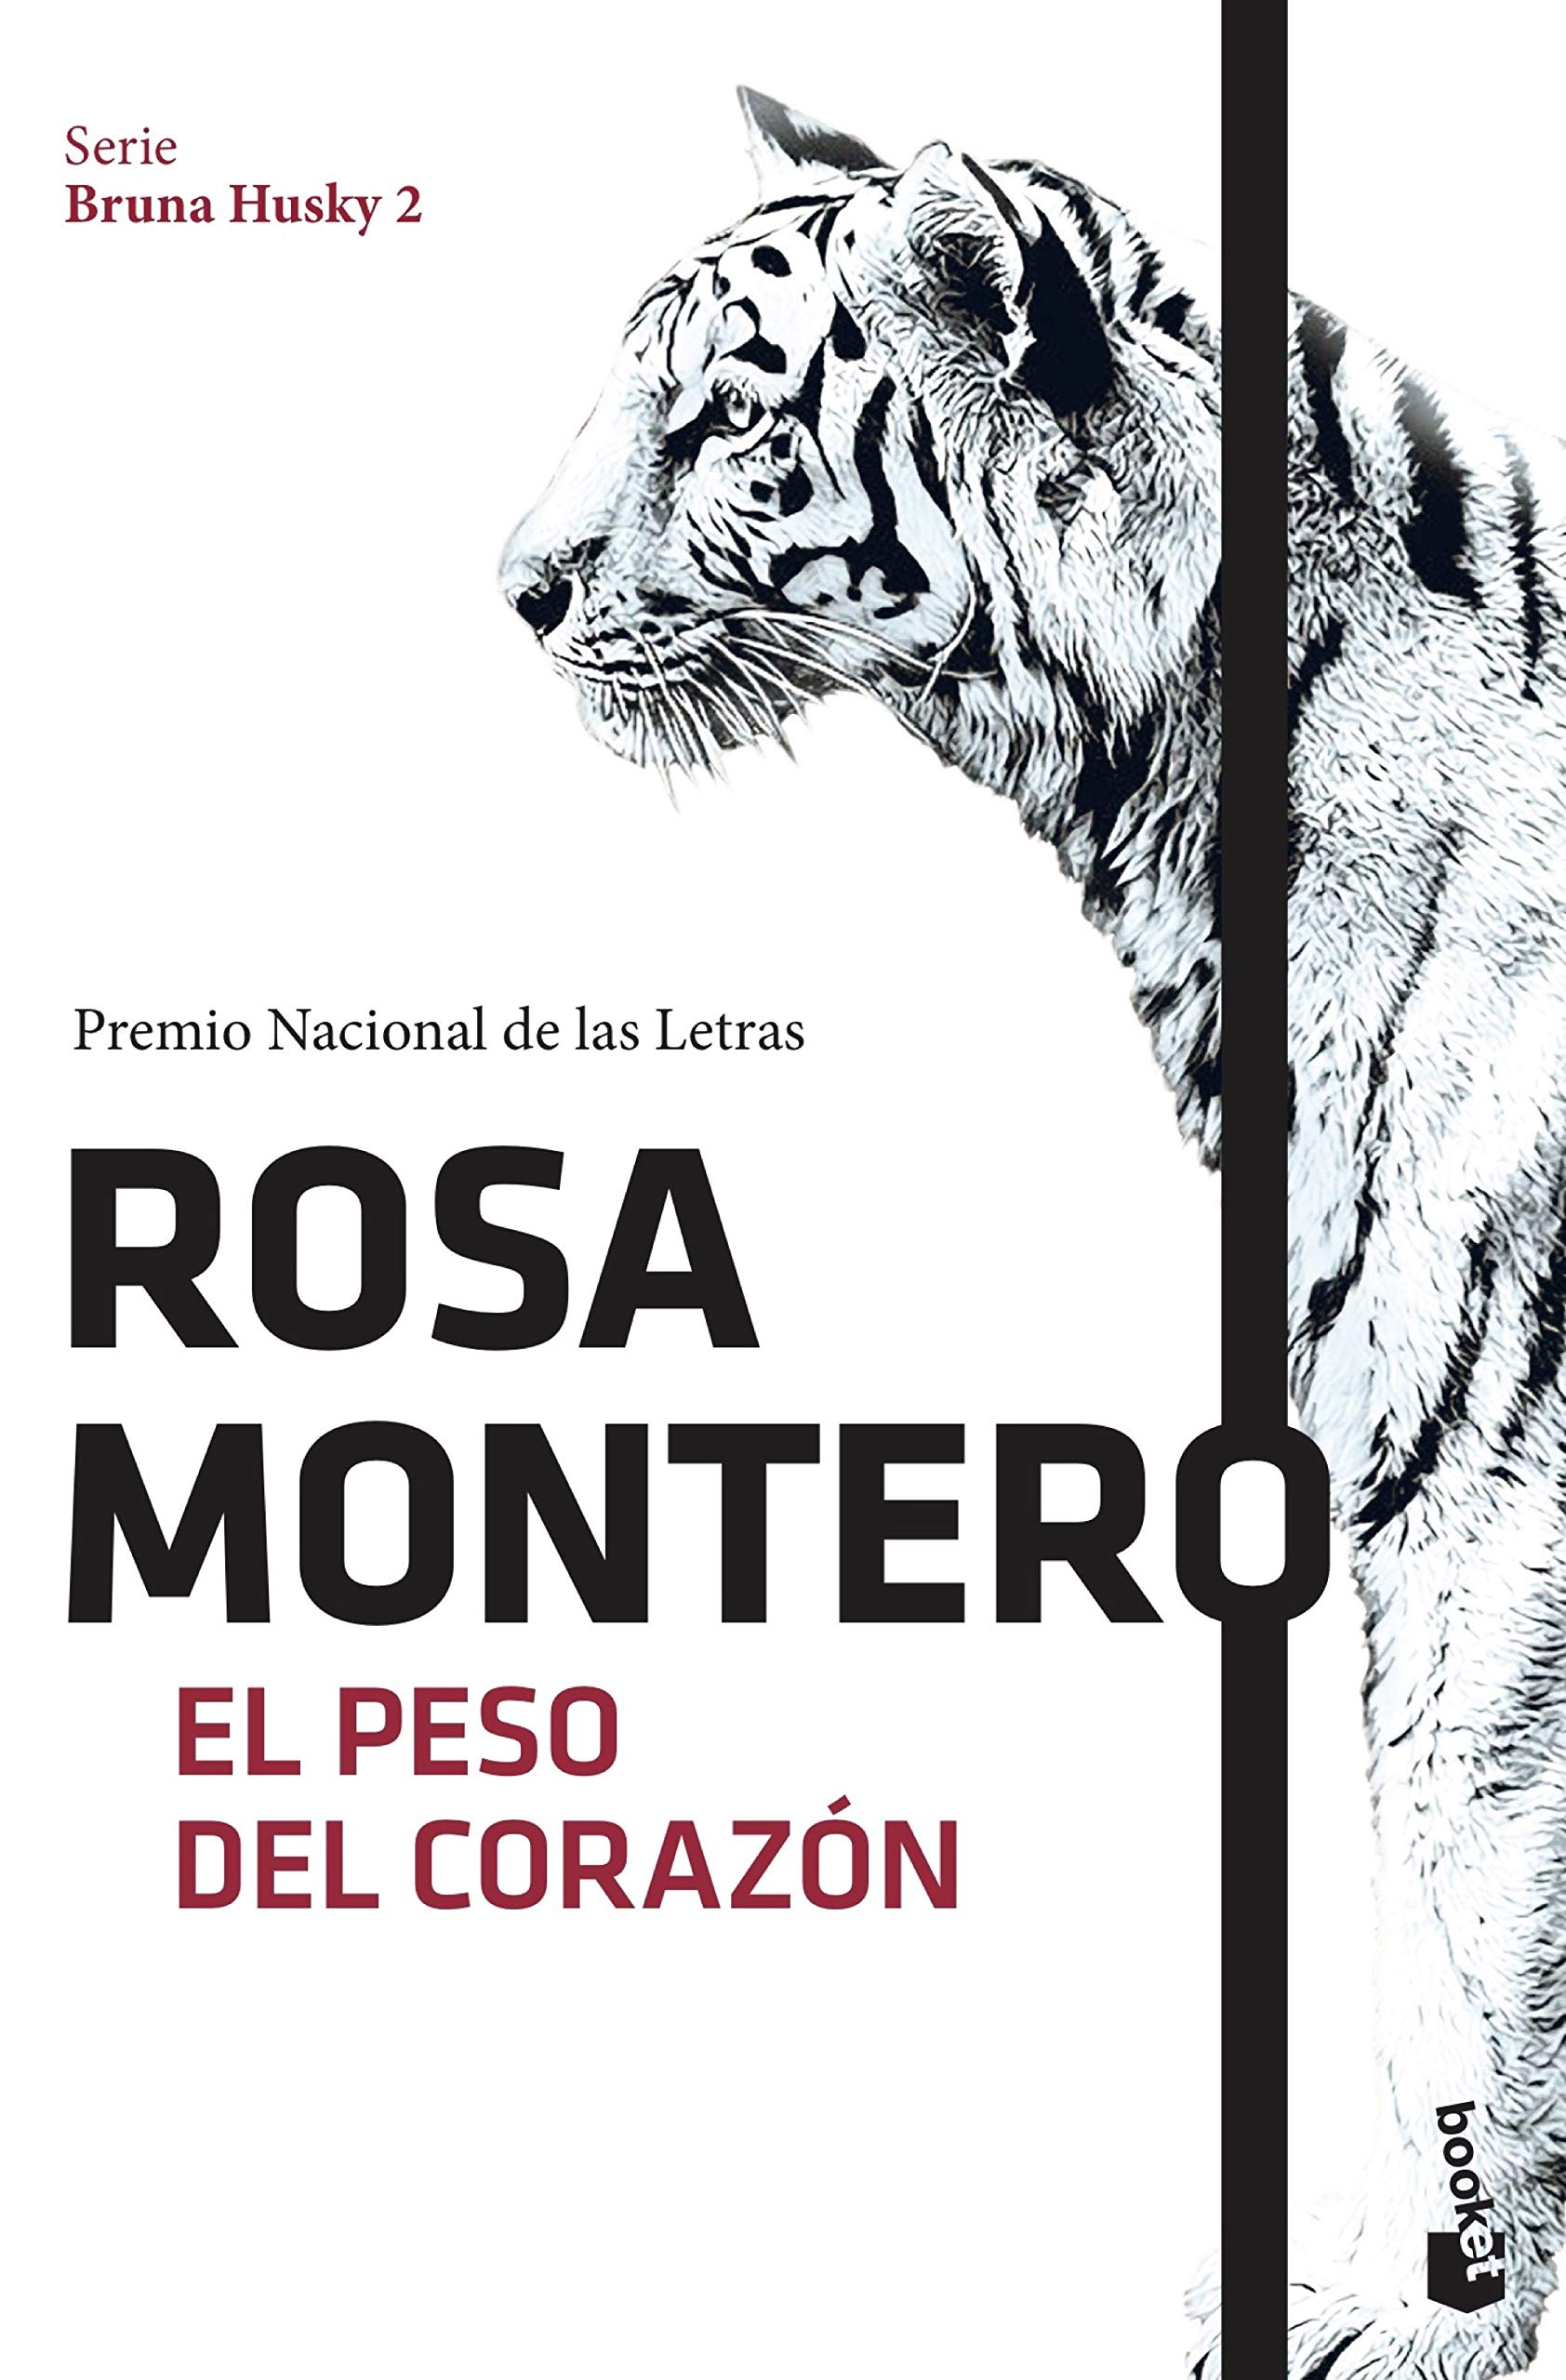 ”El peso del corazón” de Rosa Montero